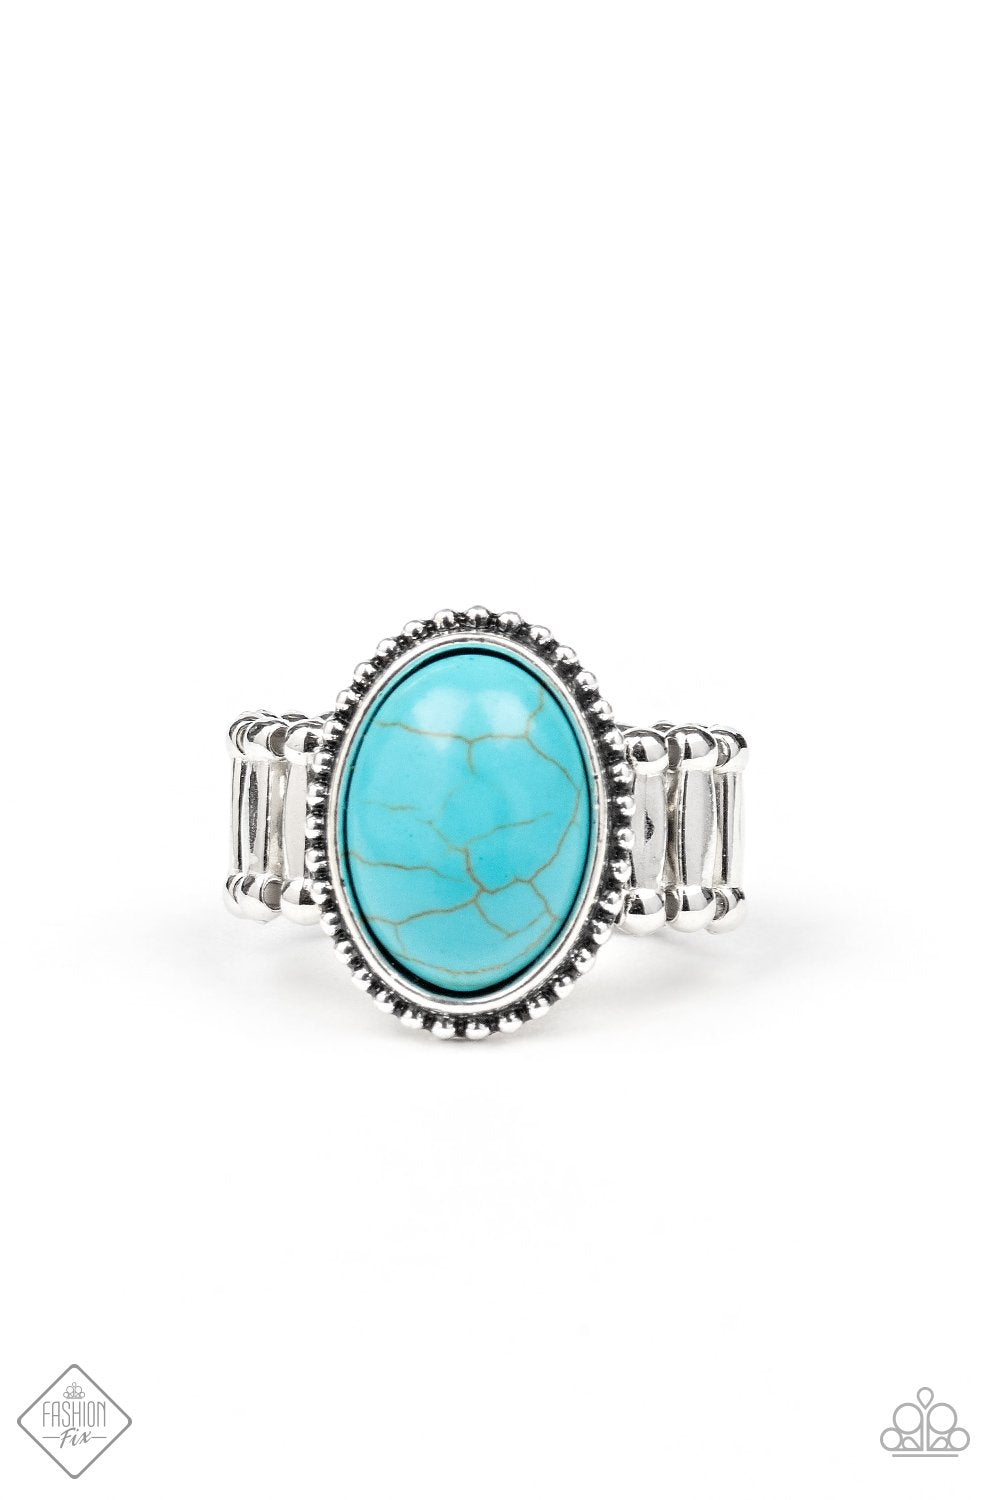 Bountiful Deserts - Paparazzi - Blue Turquoise Stone Ring